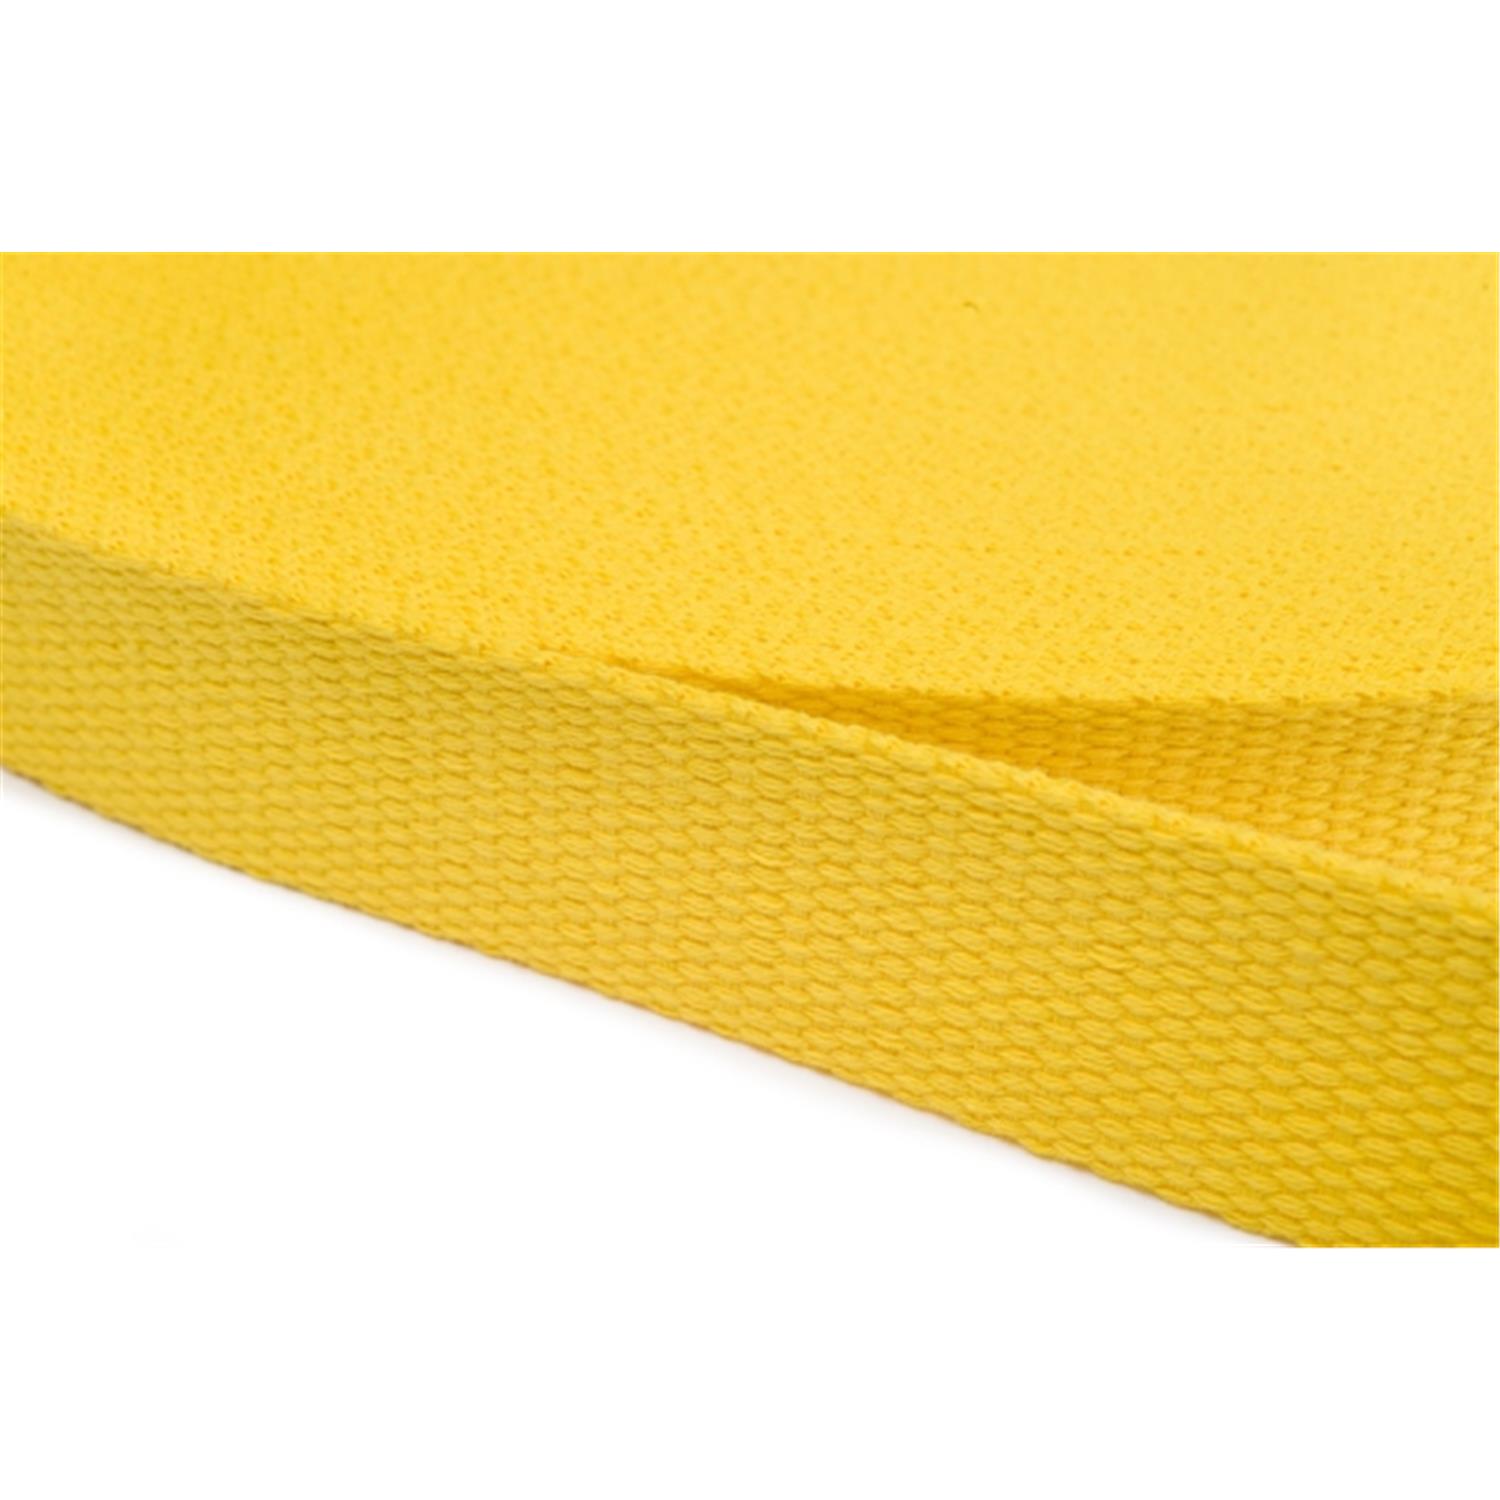 Gurtband aus Baumwolle 15mm in 20 Farben 05 - gelb 12 Meter